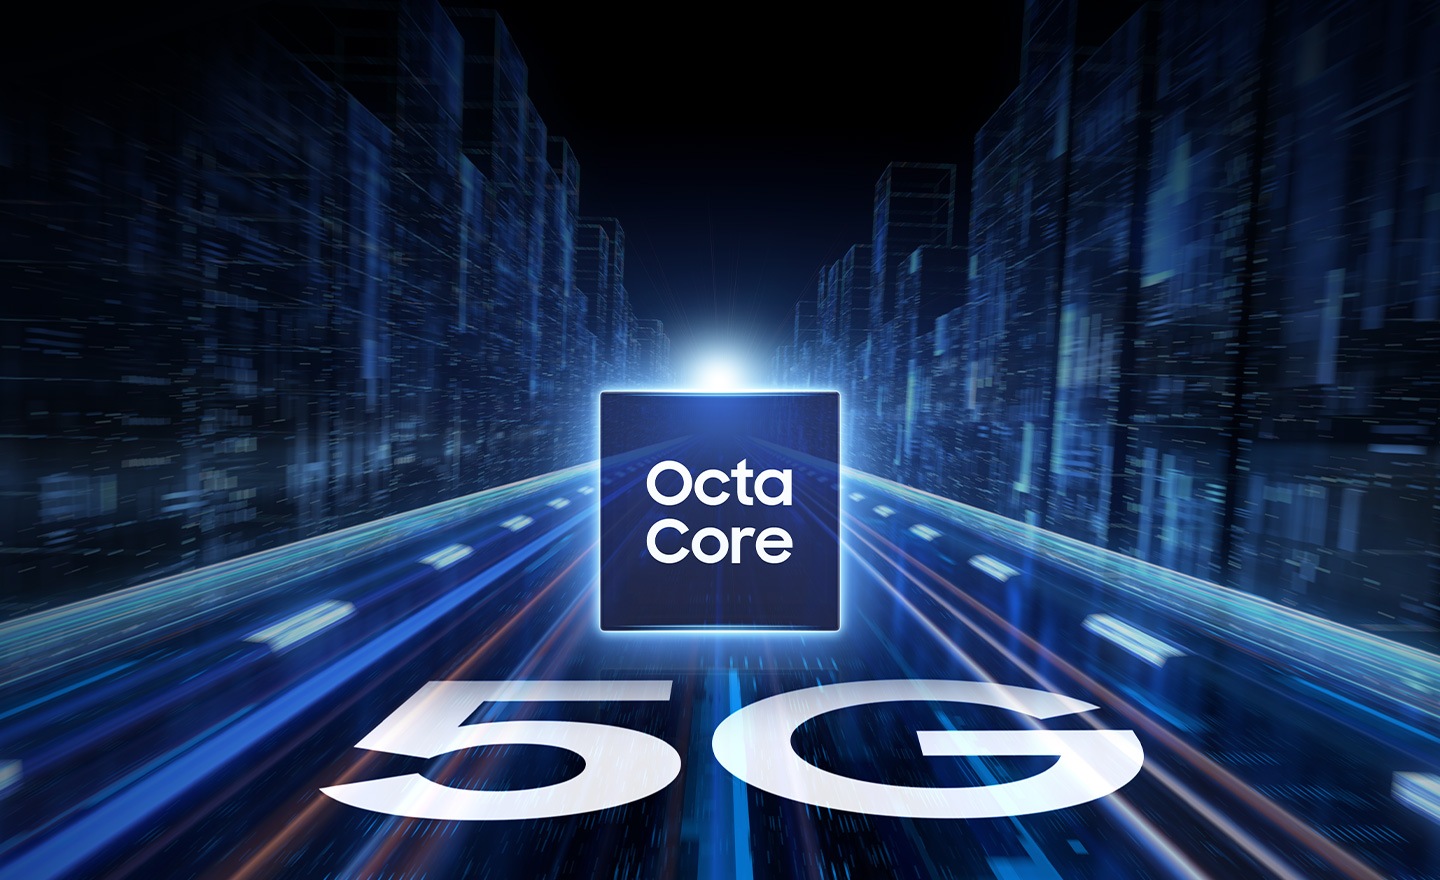 Ở giữa, dòng chữ 'Octa Core' được hiển thị. Xung quanh nó là những tia sáng và chùm ánh sáng giống như đường cao tốc và bên dưới hình vuông là dòng chữ '5G' hiển thị nghiêng như thể trên đường cao tốc.